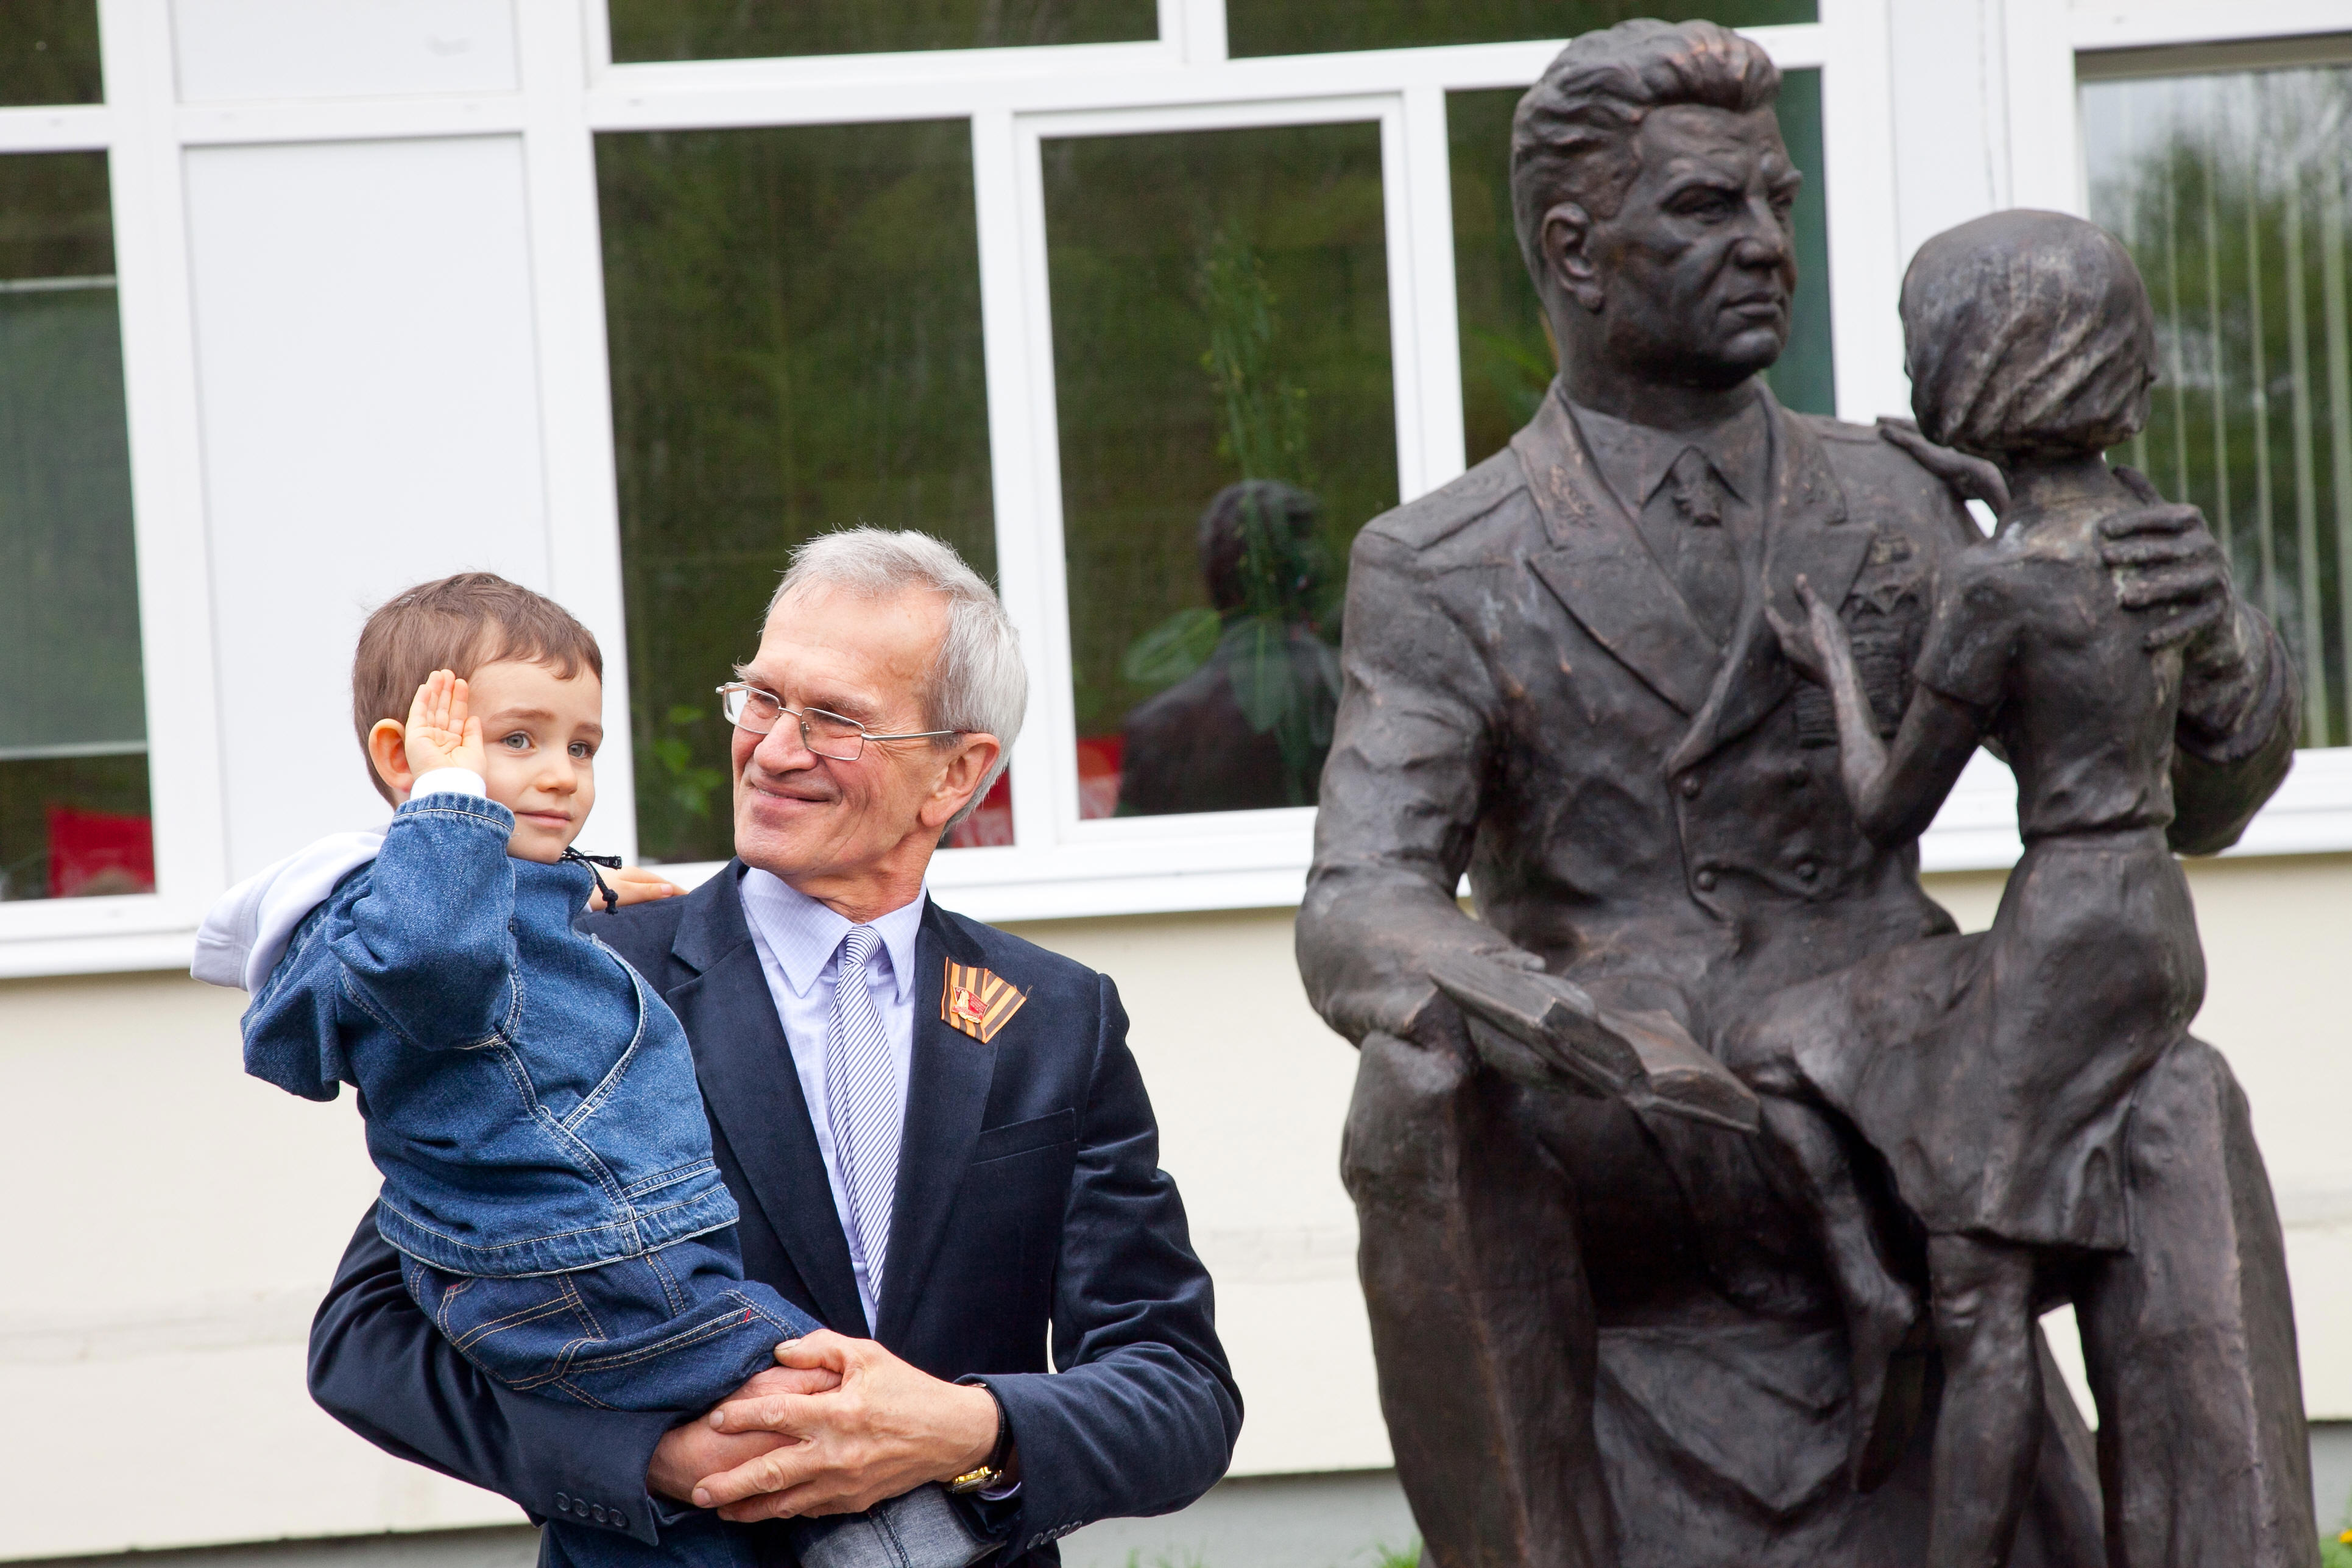 Чуйков А. со своим внуком, который является правнуком маршала. Сайт Досье Изюмова Юрия